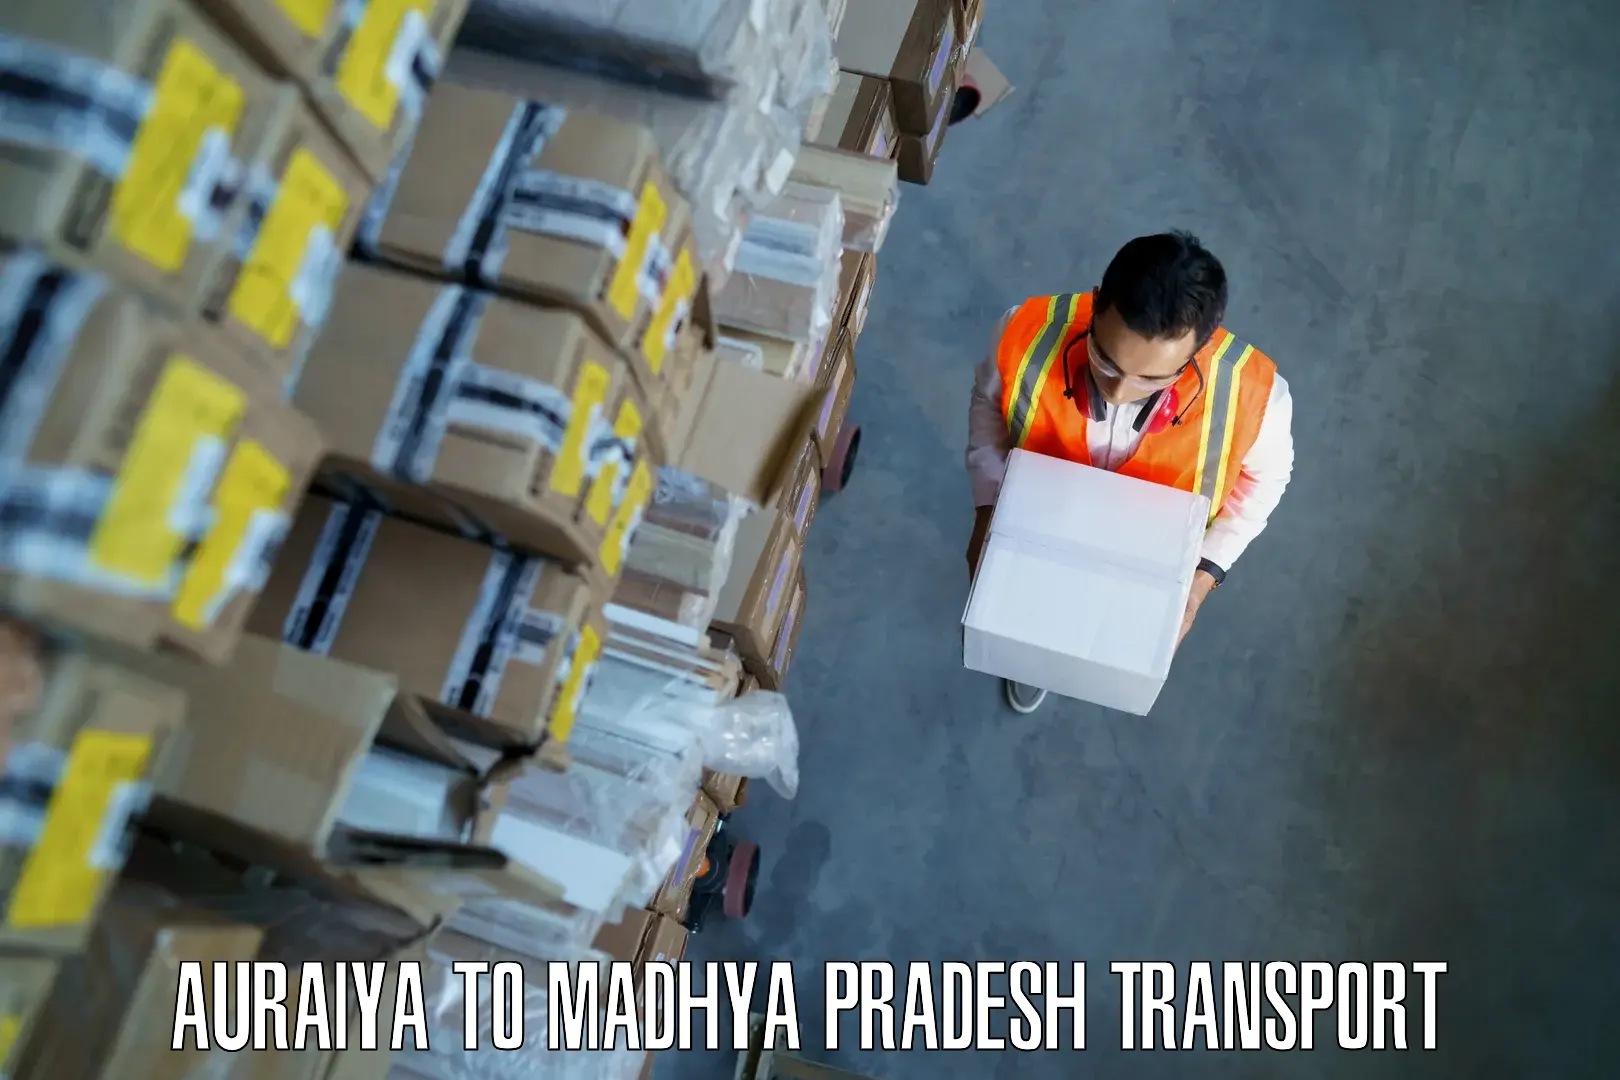 Daily parcel service transport Auraiya to Sohagi